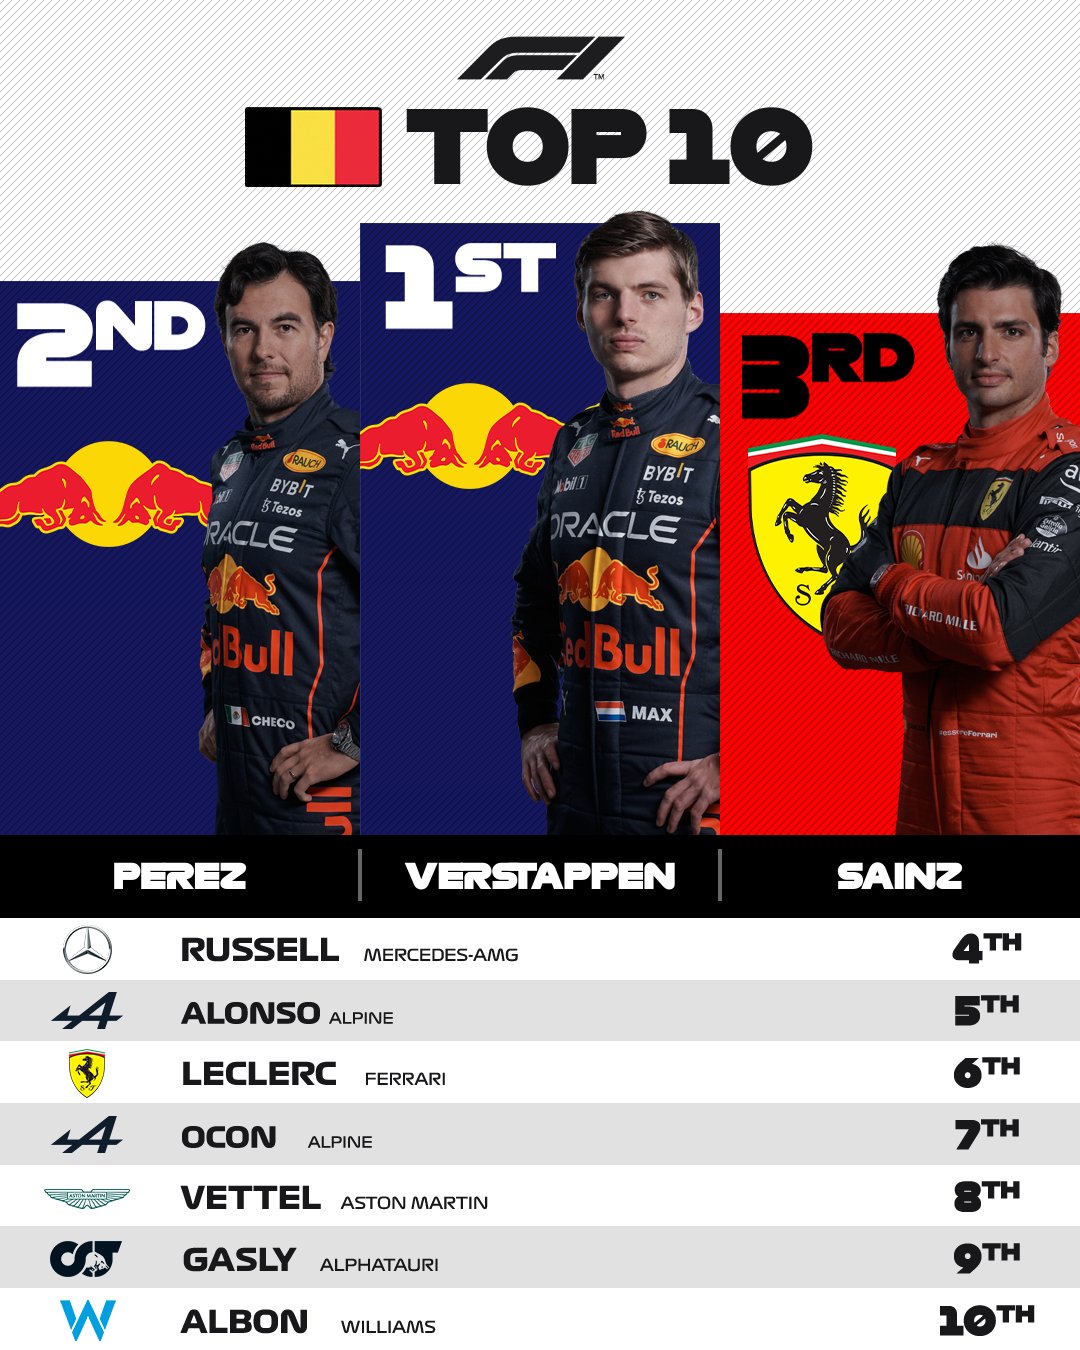 Classificação final dos pilotos que pontuaram no GP da Bélgica. Divulgação: F1.